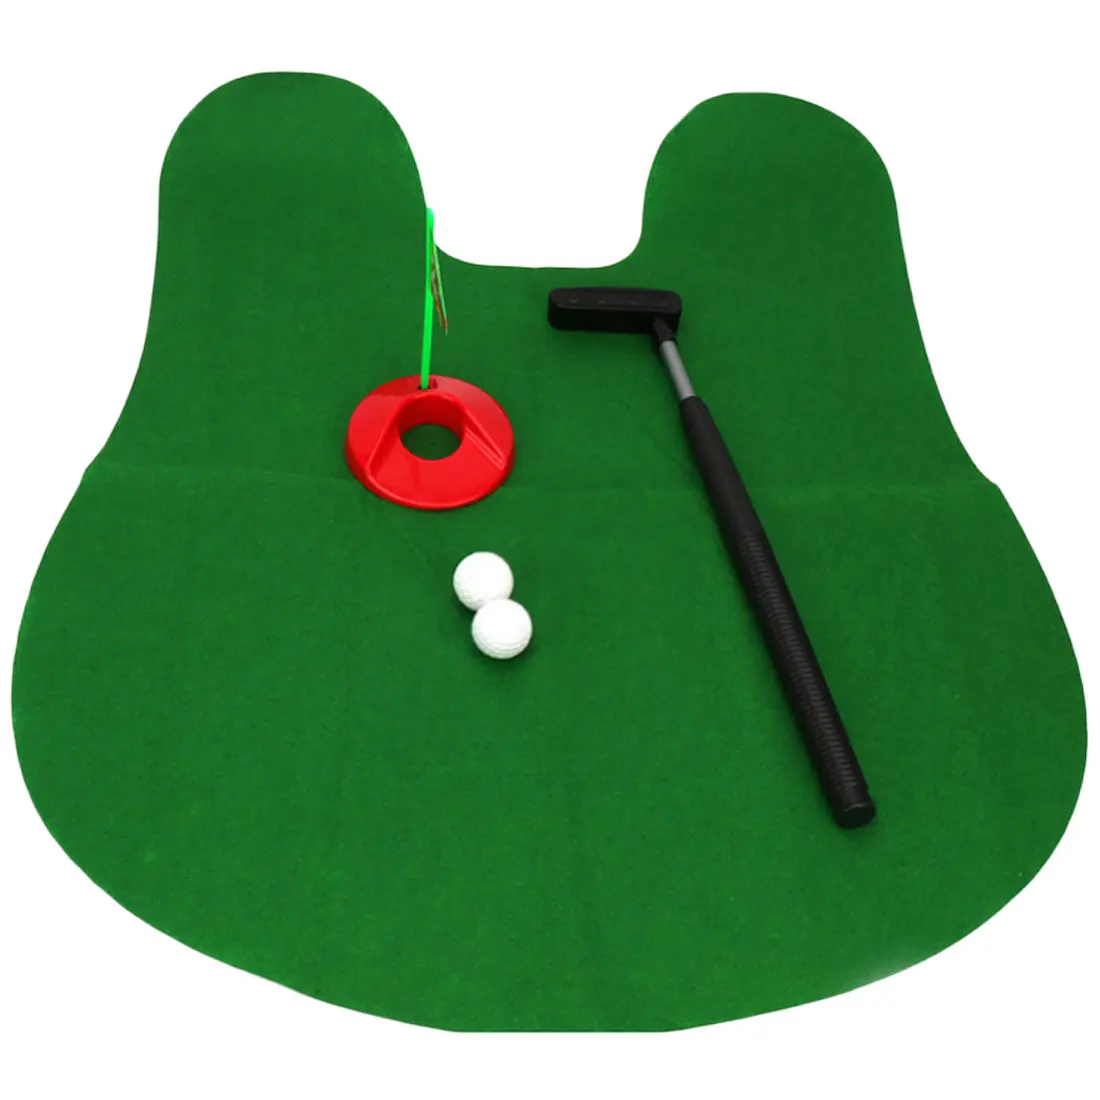 Совершенно новая игра комплект для мини-гольфа положить зеленый гольф в туалете игра для мужчин и женщин практичные шутки